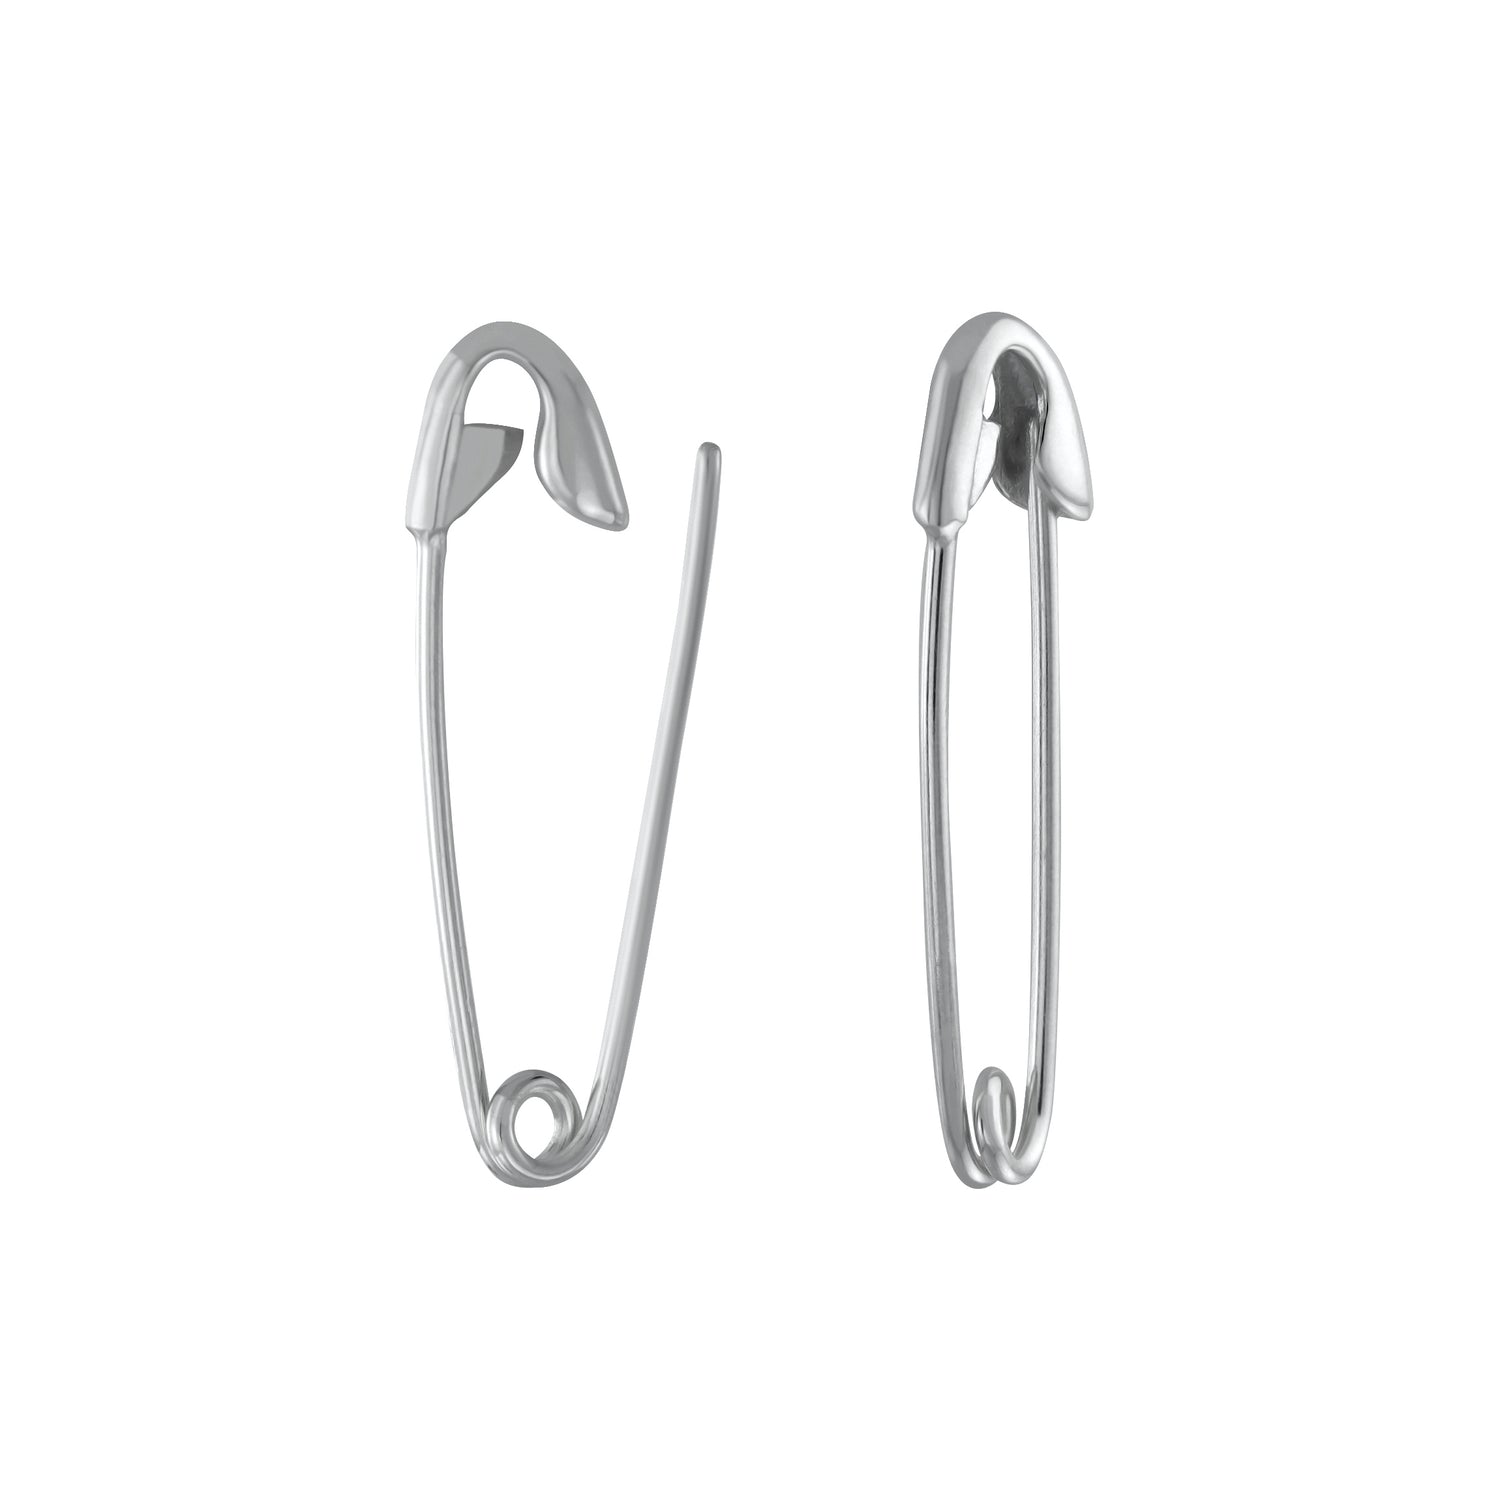 Buy LOOM TREE® Stylish Earrings Punk Safety Pin Earrings Ear Piercing  Jewelry Black| Fashion Jewelry | Earrings at Amazon.in